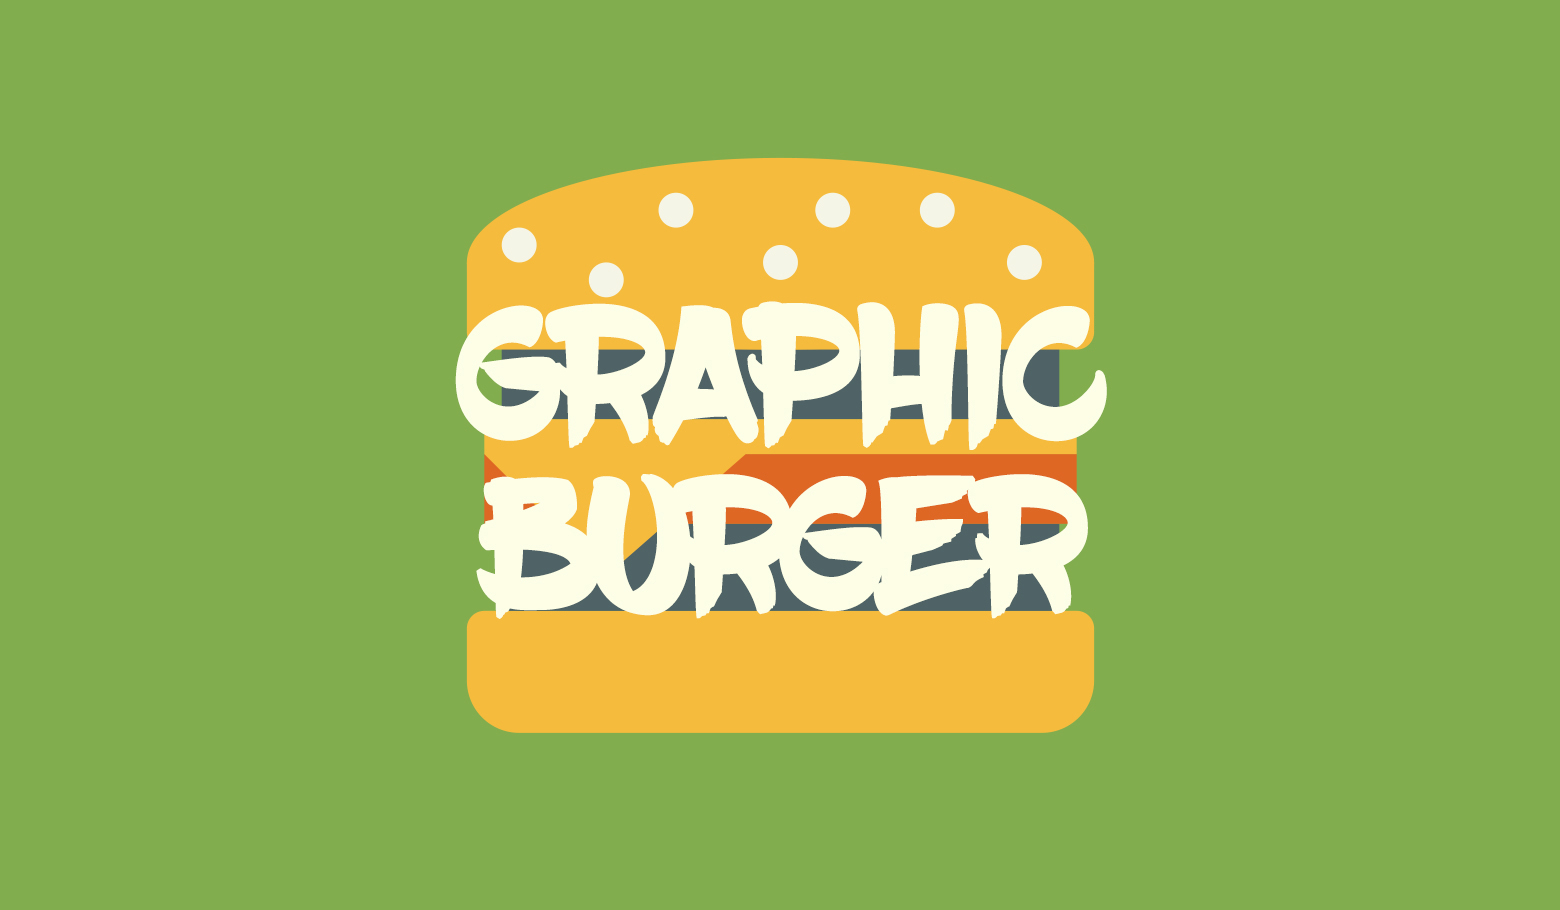 GraphicBurger｜実用的かつ高クオリティなフリー素材が揃うデザインブログ